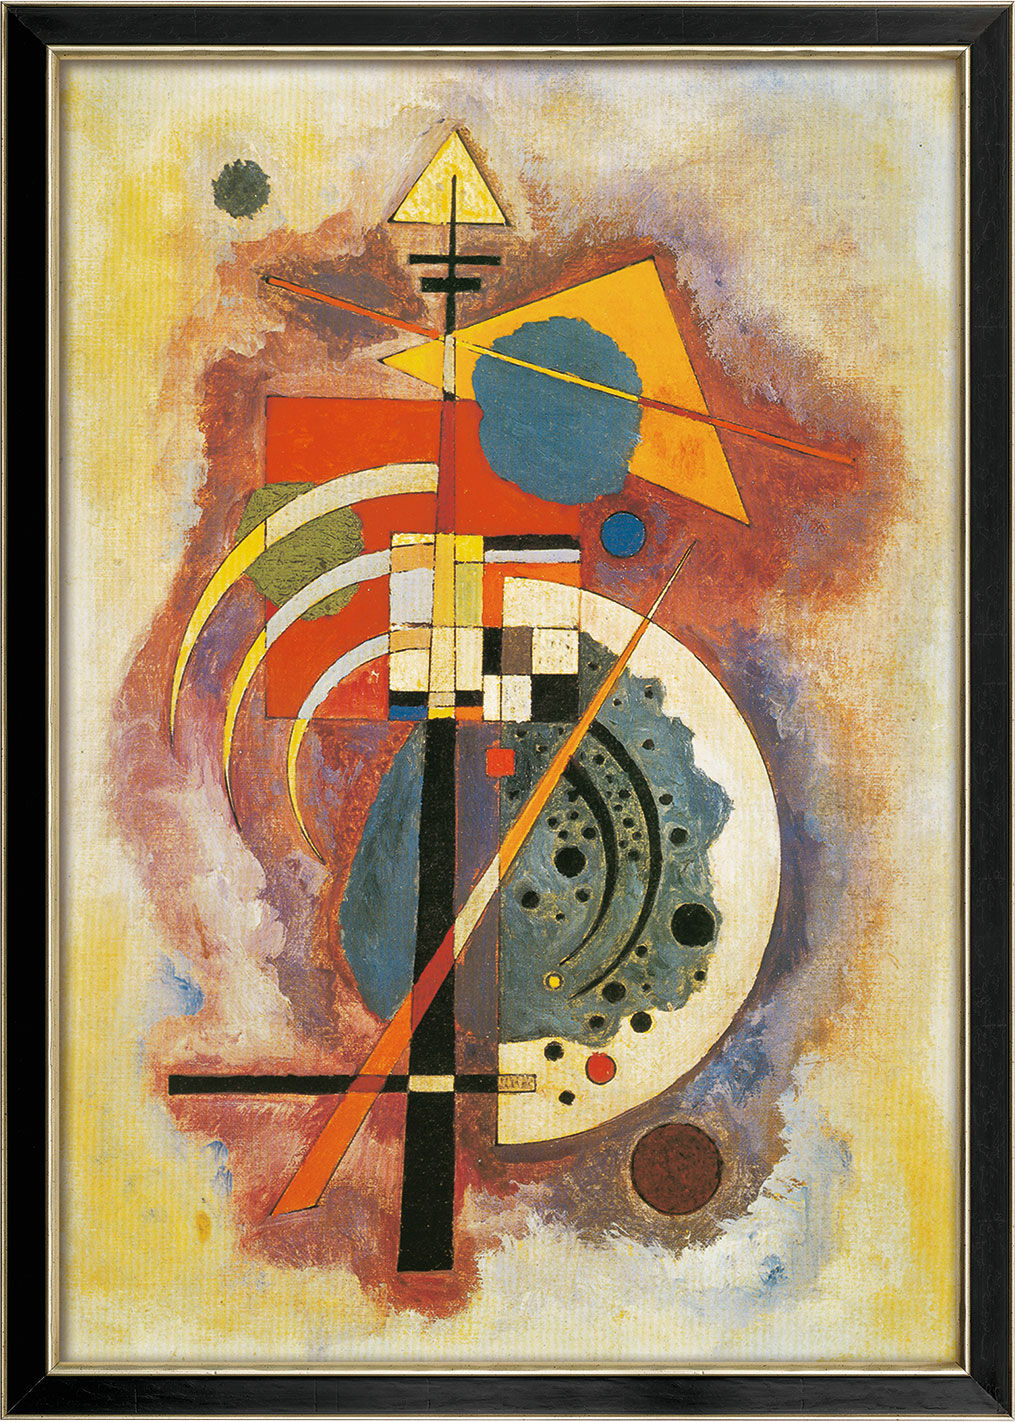 Billede "Hommage à Grohmann" (1926), indrammet von Wassily Kandinsky